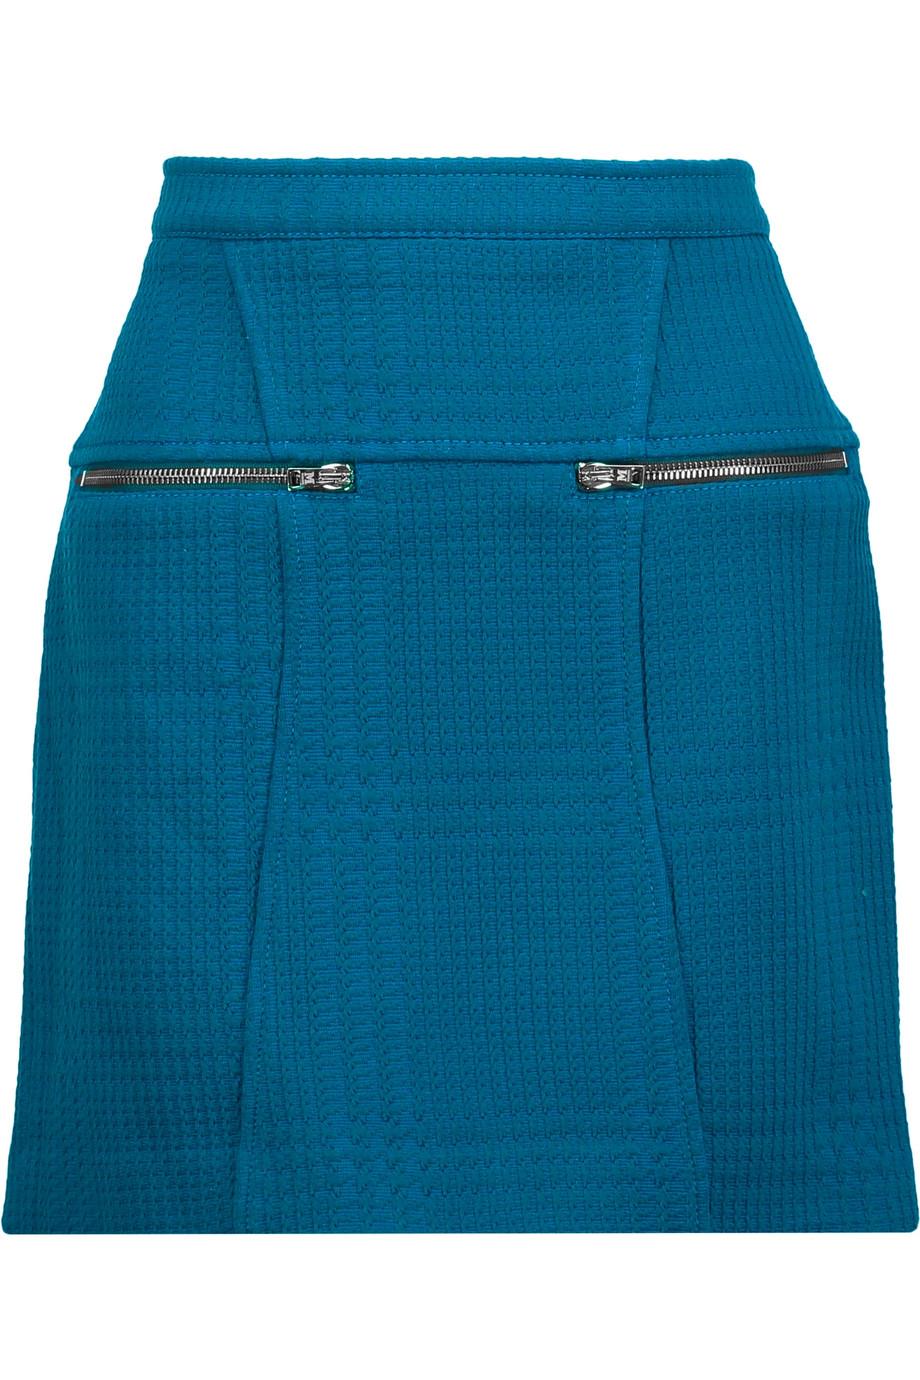 M Missoni Woven Mini Skirt | ModeSens